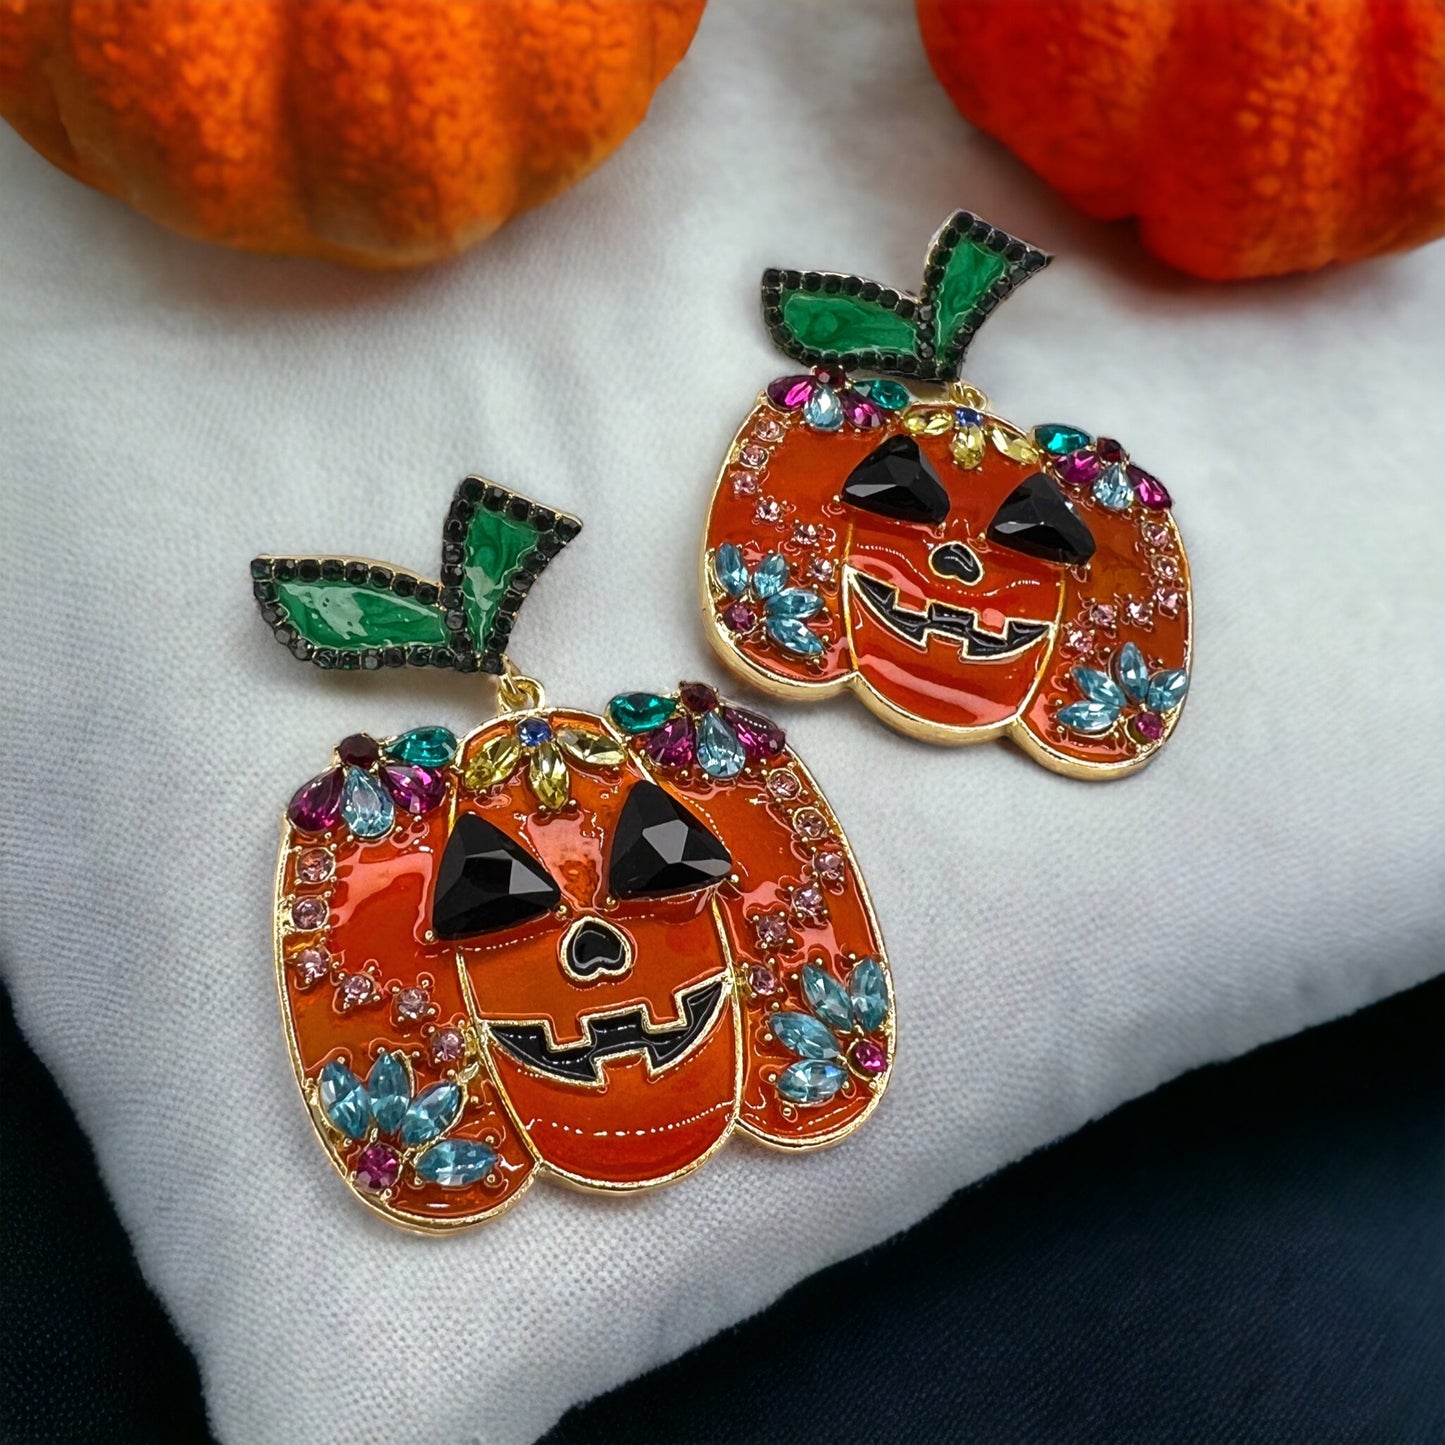 Jack-o-lantern Earrings - Halloween Earrings, Pumpkin Earrings, Halloween Accessories, Halloween Earrings, Jackolantern Earrings, Trick or Treat